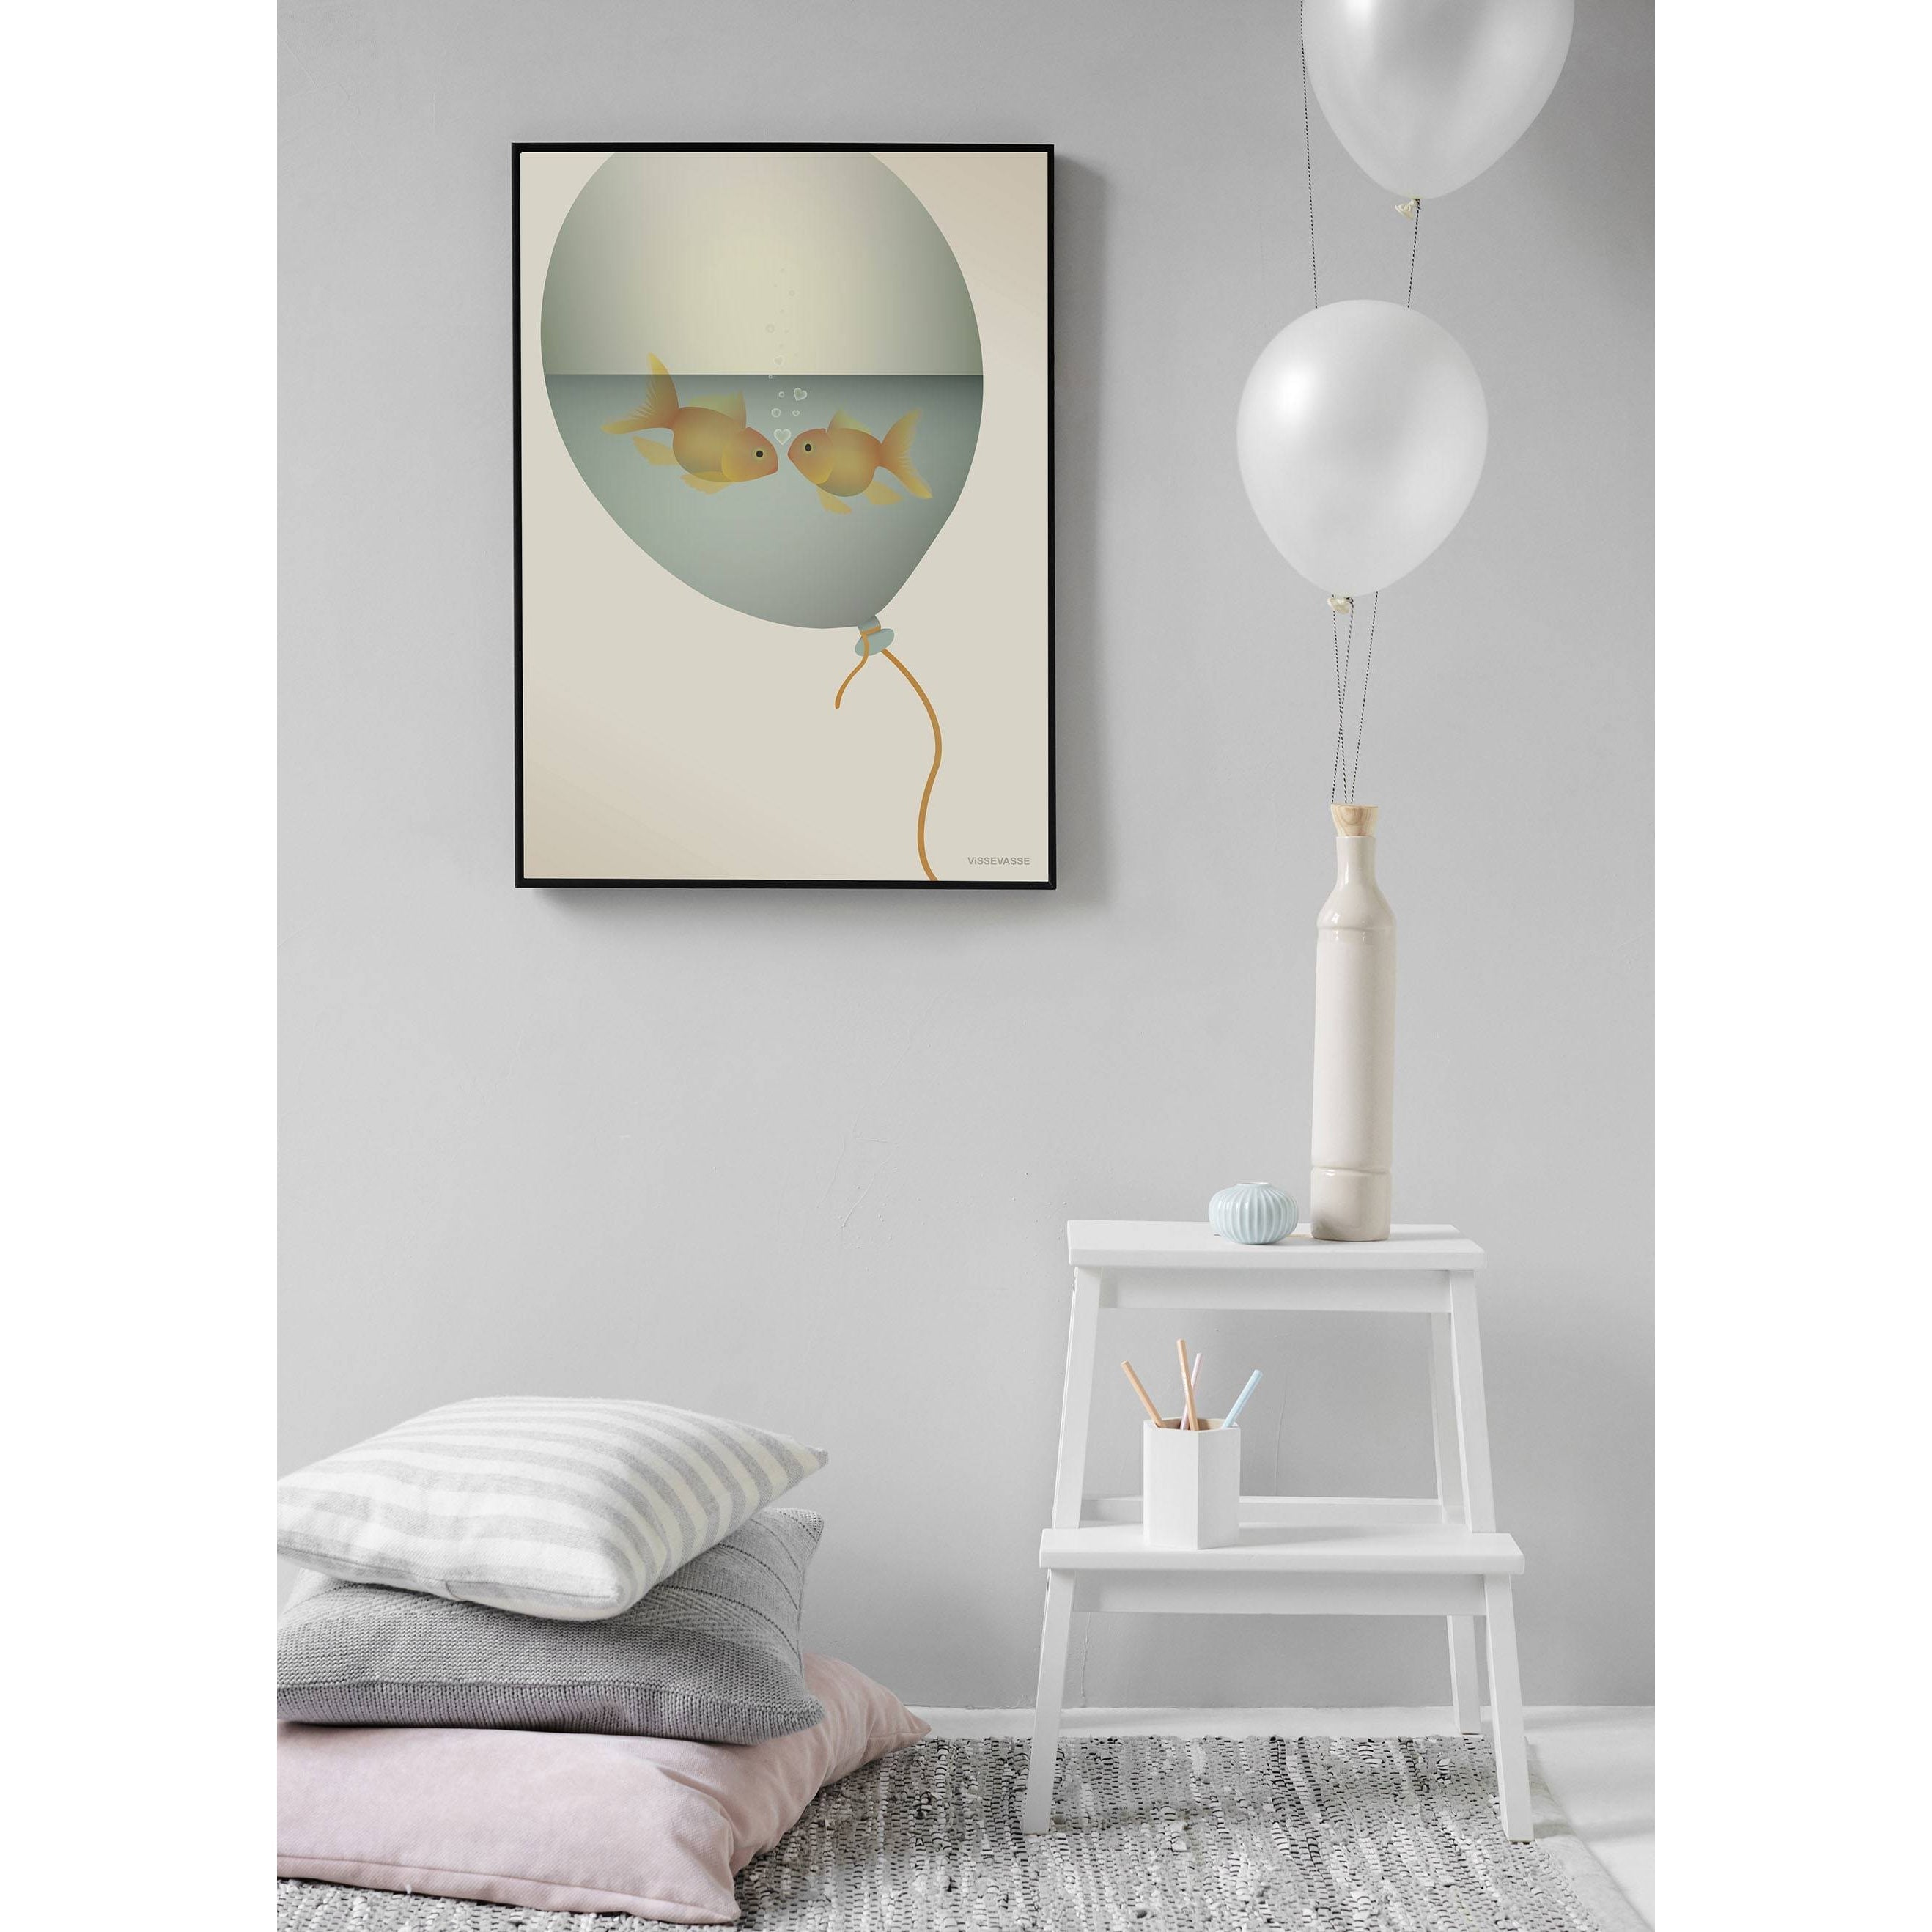 Vissevasse L'amour dans une affiche de bulle, 15 x21 cm